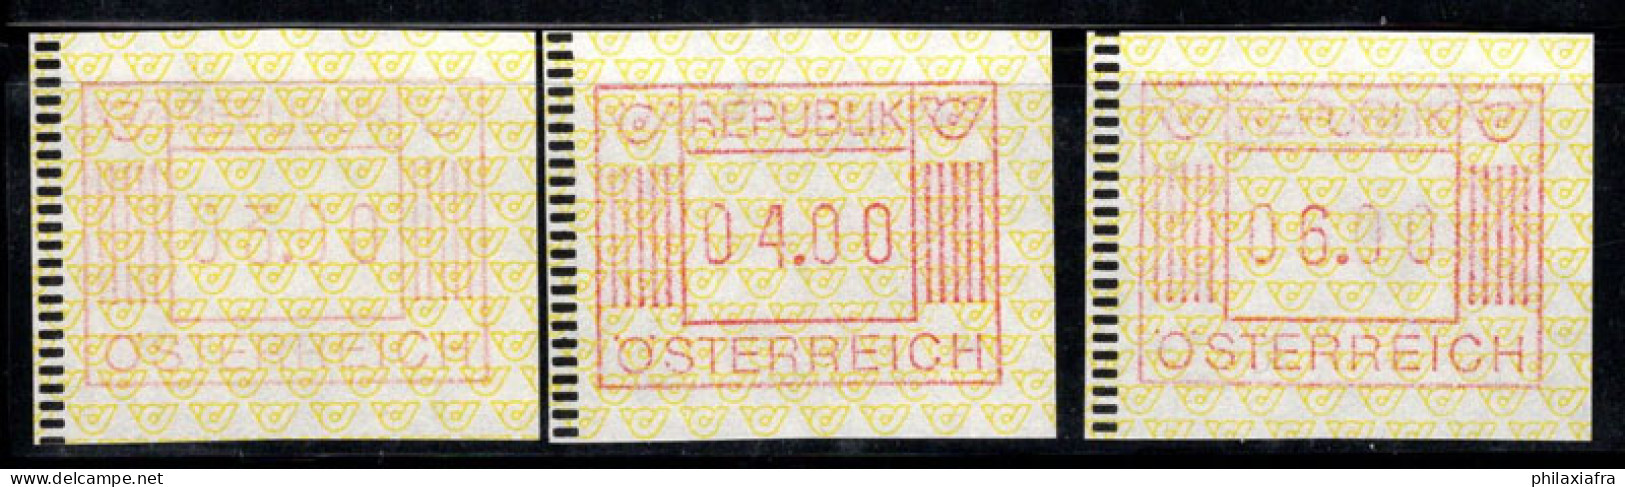 Autriche 1983 Mi. 1 Neuf ** 100% ATM 03.00, 04.00 - Macchine Per Obliterare (EMA)